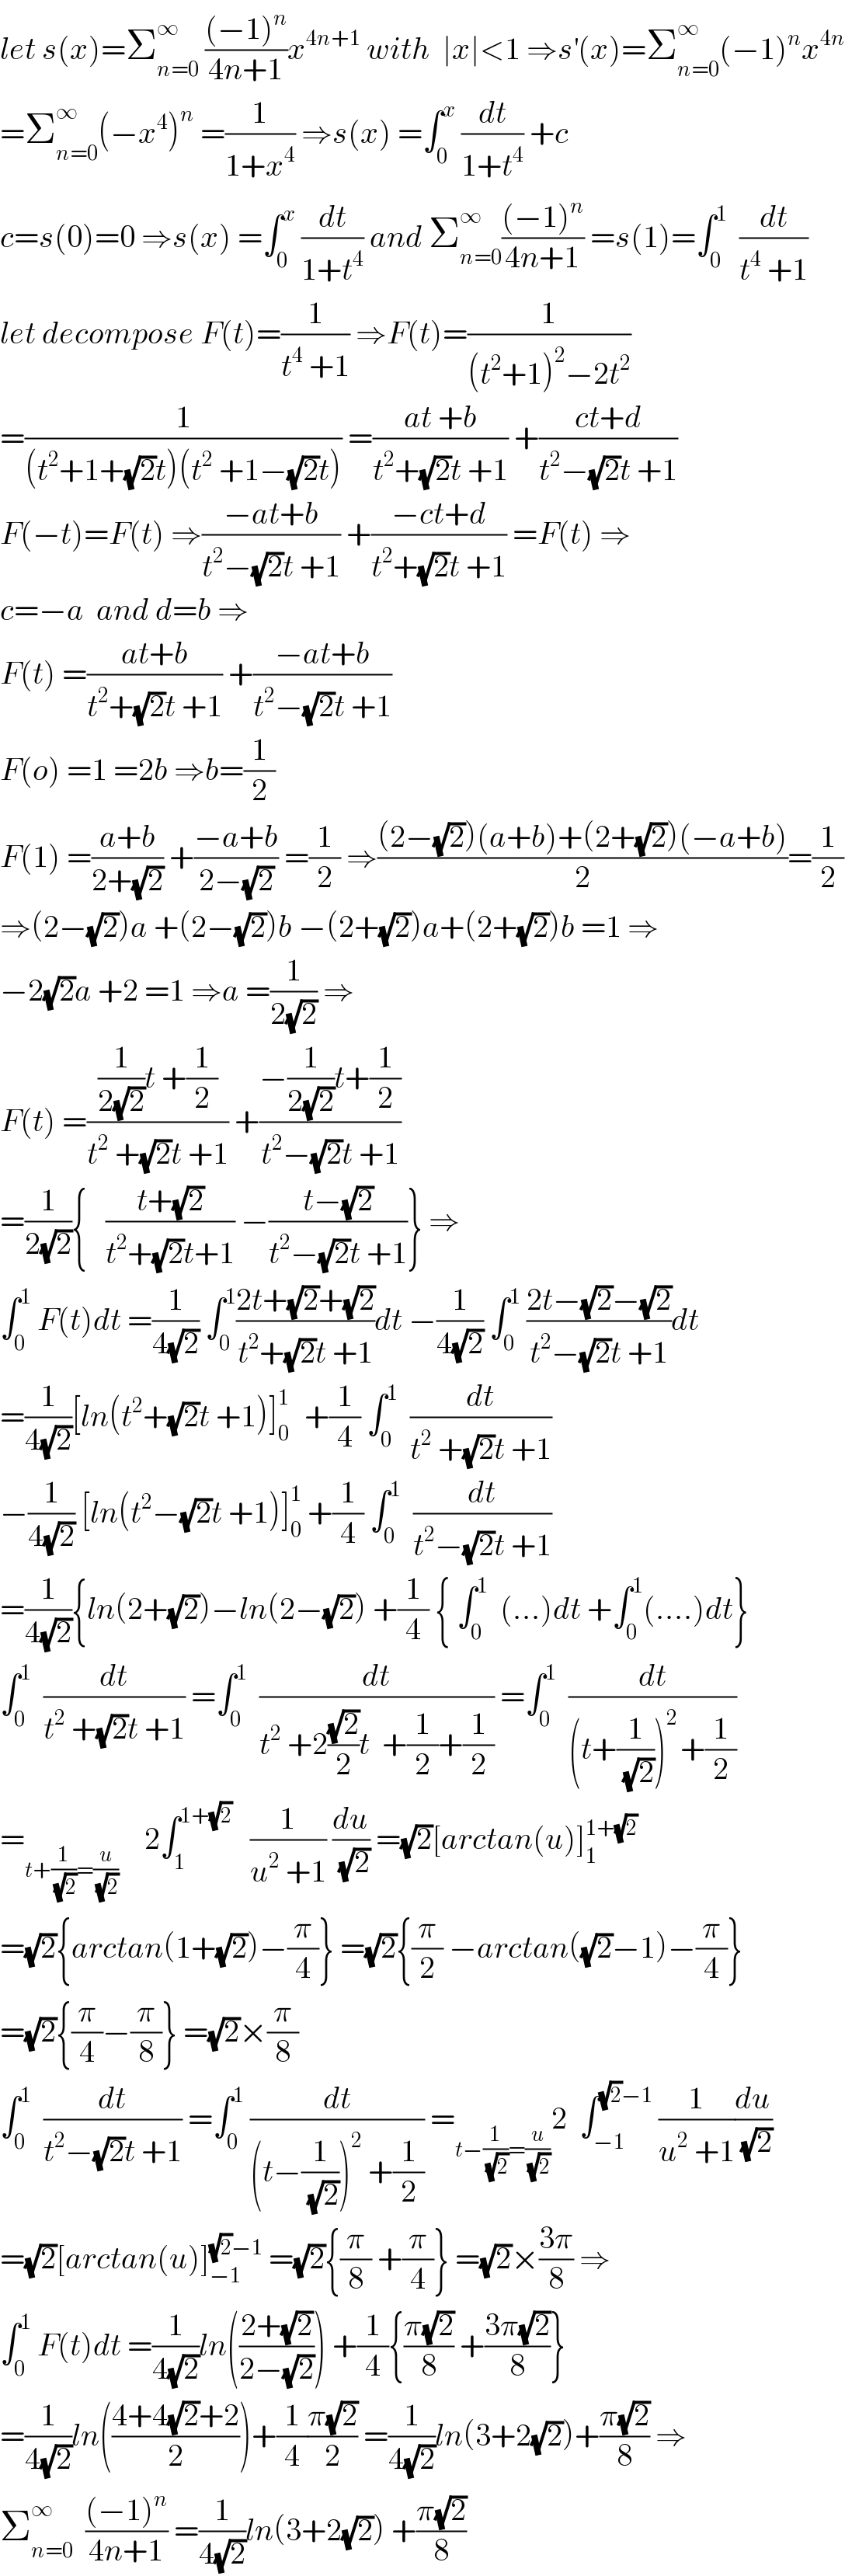 let s(x)=Σ_(n=0) ^∞  (((−1)^n )/(4n+1))x^(4n+1)  with  ∣x∣<1 ⇒s^′ (x)=Σ_(n=0) ^∞ (−1)^n x^(4n)   =Σ_(n=0) ^∞ (−x^4 )^n  =(1/(1+x^4 )) ⇒s(x) =∫_0 ^x  (dt/(1+t^4 )) +c  c=s(0)=0 ⇒s(x) =∫_0 ^x  (dt/(1+t^4 )) and Σ_(n=0) ^∞ (((−1)^n )/(4n+1)) =s(1)=∫_0 ^1   (dt/(t^4  +1))  let decompose F(t)=(1/(t^4  +1)) ⇒F(t)=(1/((t^2 +1)^2 −2t^2 ))  =(1/((t^2 +1+(√2)t)(t^2  +1−(√2)t))) =((at +b)/(t^2 +(√2)t +1)) +((ct+d)/(t^2 −(√2)t +1))  F(−t)=F(t) ⇒((−at+b)/(t^2 −(√2)t +1)) +((−ct+d)/(t^2 +(√2)t +1)) =F(t) ⇒  c=−a  and d=b ⇒  F(t) =((at+b)/(t^2 +(√2)t +1)) +((−at+b)/(t^2 −(√2)t +1))  F(o) =1 =2b ⇒b=(1/2)  F(1) =((a+b)/(2+(√2))) +((−a+b)/(2−(√2))) =(1/2) ⇒(((2−(√2))(a+b)+(2+(√2))(−a+b))/2)=(1/2)  ⇒(2−(√2))a +(2−(√2))b −(2+(√2))a+(2+(√2))b =1 ⇒  −2(√2)a +2 =1 ⇒a =(1/(2(√2))) ⇒  F(t) =(((1/(2(√2)))t +(1/2))/(t^2  +(√2)t +1)) +((−(1/(2(√2)))t+(1/2))/(t^2 −(√2)t +1))  =(1/(2(√2))){   ((t+(√2))/(t^2 +(√2)t+1)) −((t−(√2))/(t^2 −(√2)t +1))} ⇒  ∫_0 ^1  F(t)dt =(1/(4(√2))) ∫_0 ^1 ((2t+(√2)+(√2))/(t^2 +(√2)t +1))dt −(1/(4(√2))) ∫_0 ^1  ((2t−(√2)−(√2))/(t^2 −(√2)t +1))dt  =(1/(4(√2)))[ln(t^2 +(√2)t +1)]_0 ^(1 )   +(1/4) ∫_0 ^1   (dt/(t^2  +(√2)t +1))  −(1/(4(√2))) [ln(t^2 −(√2)t +1)]_0 ^1  +(1/4) ∫_0 ^1   (dt/(t^2 −(√2)t +1))  =(1/(4(√2))){ln(2+(√2))−ln(2−(√2)) +(1/4) { ∫_0 ^1   (...)dt +∫_0 ^1 (....)dt}  ∫_0 ^1   (dt/(t^2  +(√2)t +1)) =∫_0 ^1   (dt/(t^2  +2((√2)/2)t  +(1/2)+(1/2))) =∫_0 ^1   (dt/((t+(1/(√2)))^(2 ) +(1/2)))  =_(t+(1/(√2))=(u/(√2)))     2∫_1 ^(1+(√2))    (1/(u^2  +1)) (du/(√2)) =(√2)[arctan(u)]_1 ^(1+(√2))   =(√2){arctan(1+(√2))−(π/4)} =(√2){(π/2) −arctan((√2)−1)−(π/4)}  =(√2){(π/4)−(π/8)} =(√2)×(π/8)  ∫_0 ^1   (dt/(t^2 −(√2)t +1)) =∫_0 ^1  (dt/((t−(1/(√2)))^2  +(1/2))) =_(t−(1/(√2))=(u/(√2))) 2  ∫_(−1) ^((√2)−1)  (1/(u^2  +1))(du/(√2))  =(√2)[arctan(u)]_(−1) ^((√2)−1)  =(√2){(π/8) +(π/4)} =(√2)×((3π)/8) ⇒  ∫_0 ^1  F(t)dt =(1/(4(√2)))ln(((2+(√2))/(2−(√2)))) +(1/4){((π(√2))/8) +((3π(√2))/8)}  =(1/(4(√2)))ln(((4+4(√2)+2)/2))+(1/4)((π(√2))/2) =(1/(4(√2)))ln(3+2(√2))+((π(√2))/8) ⇒  Σ_(n=0) ^∞   (((−1)^n )/(4n+1)) =(1/(4(√2)))ln(3+2(√2)) +((π(√2))/8)  